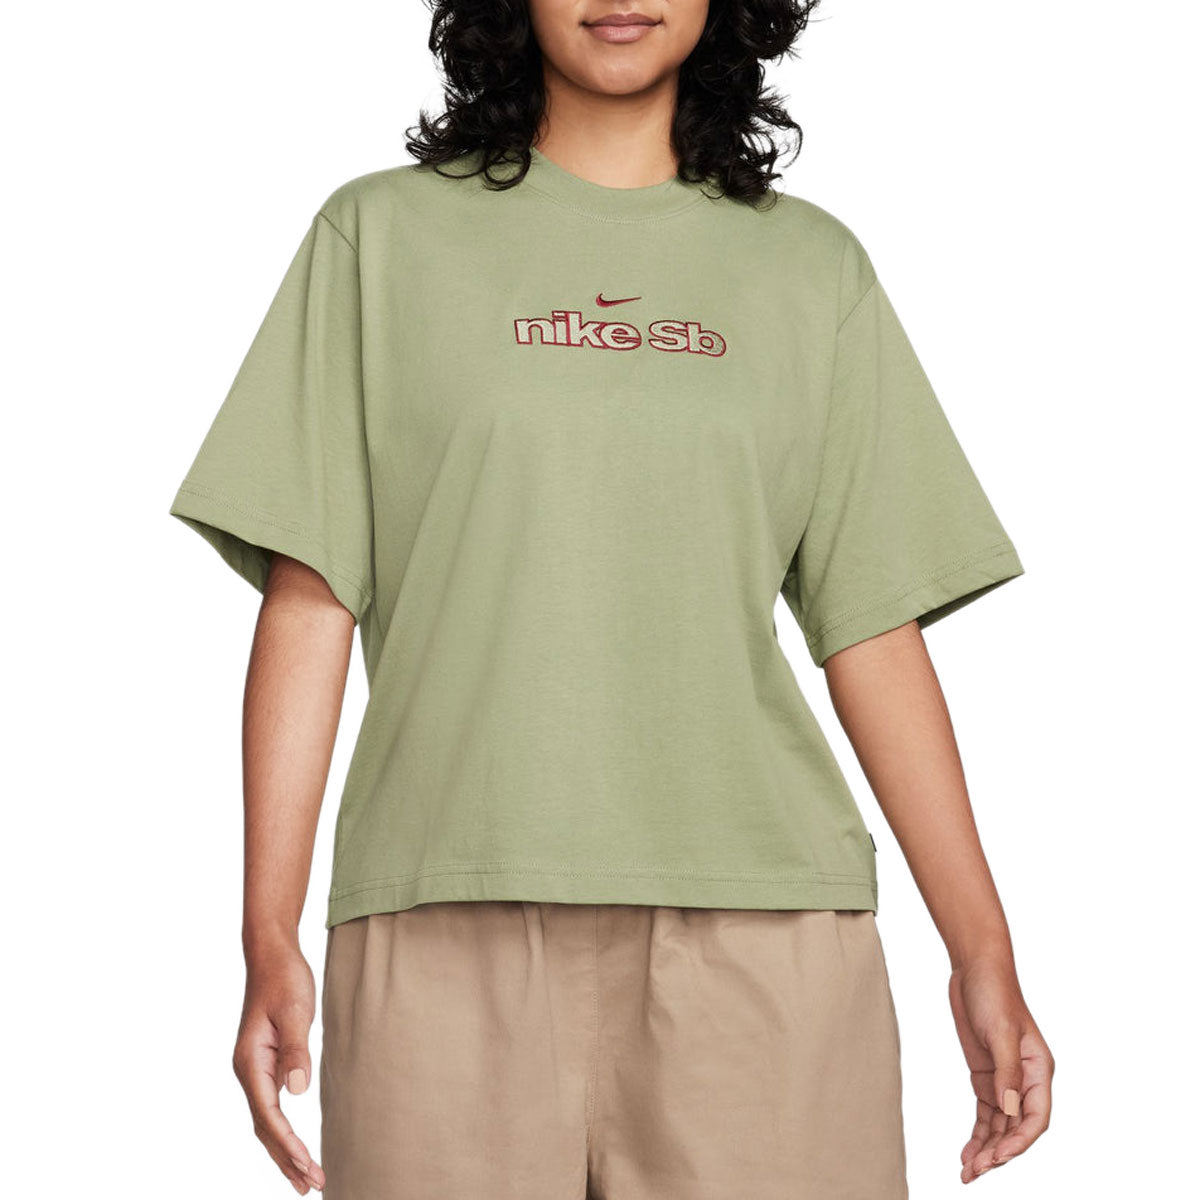 Nike SB Skate Outline T-Shirt - Oil Green image 1